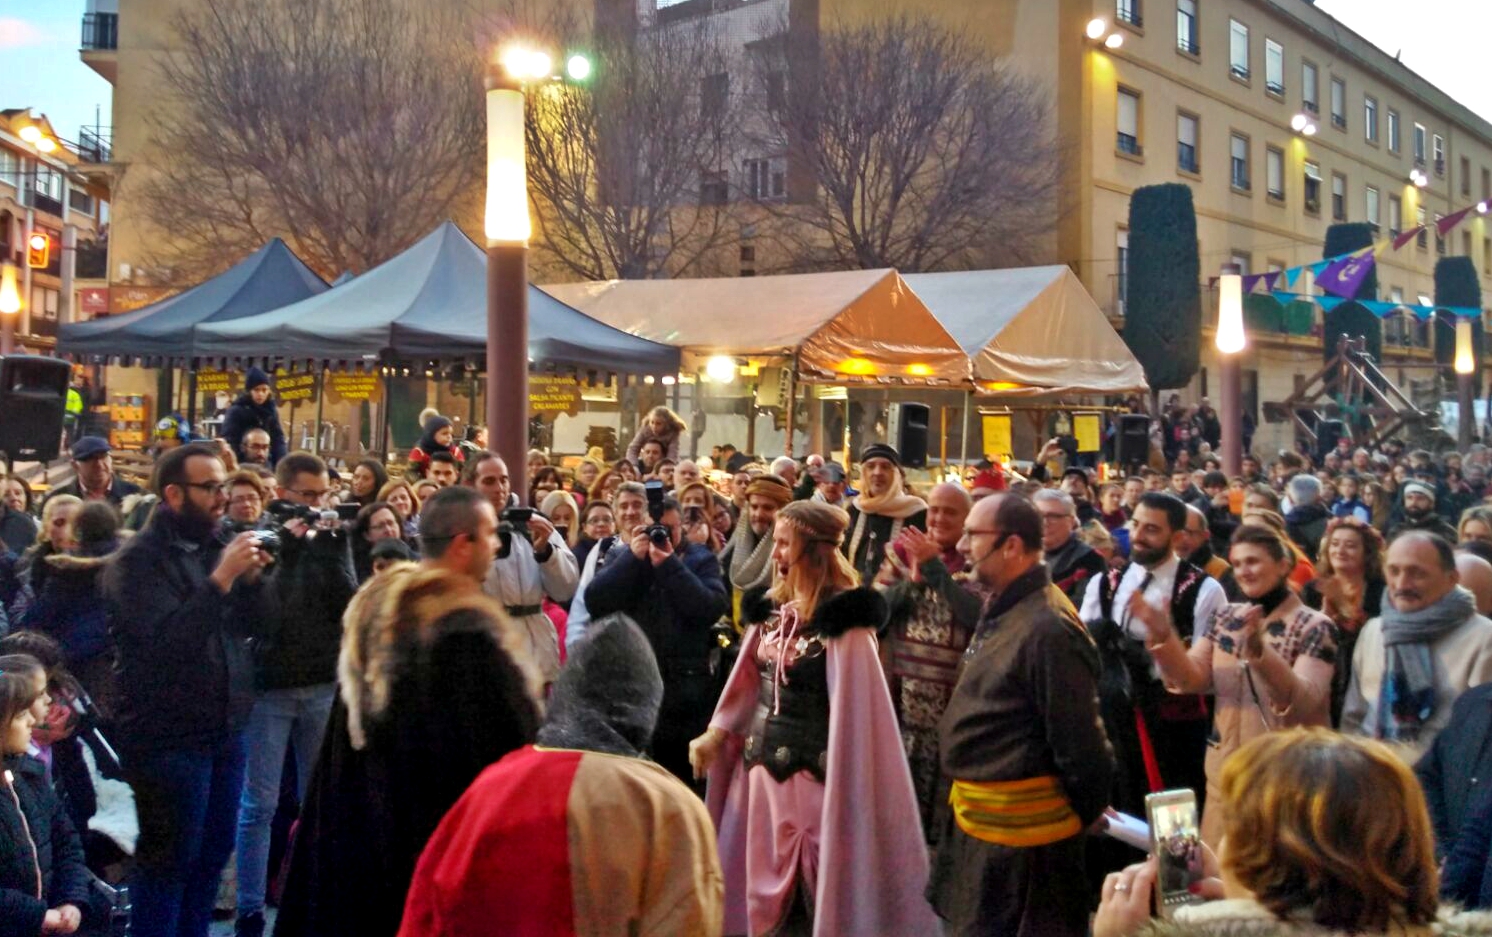 Spain’s largest Medieval Market gets underway despite the rain